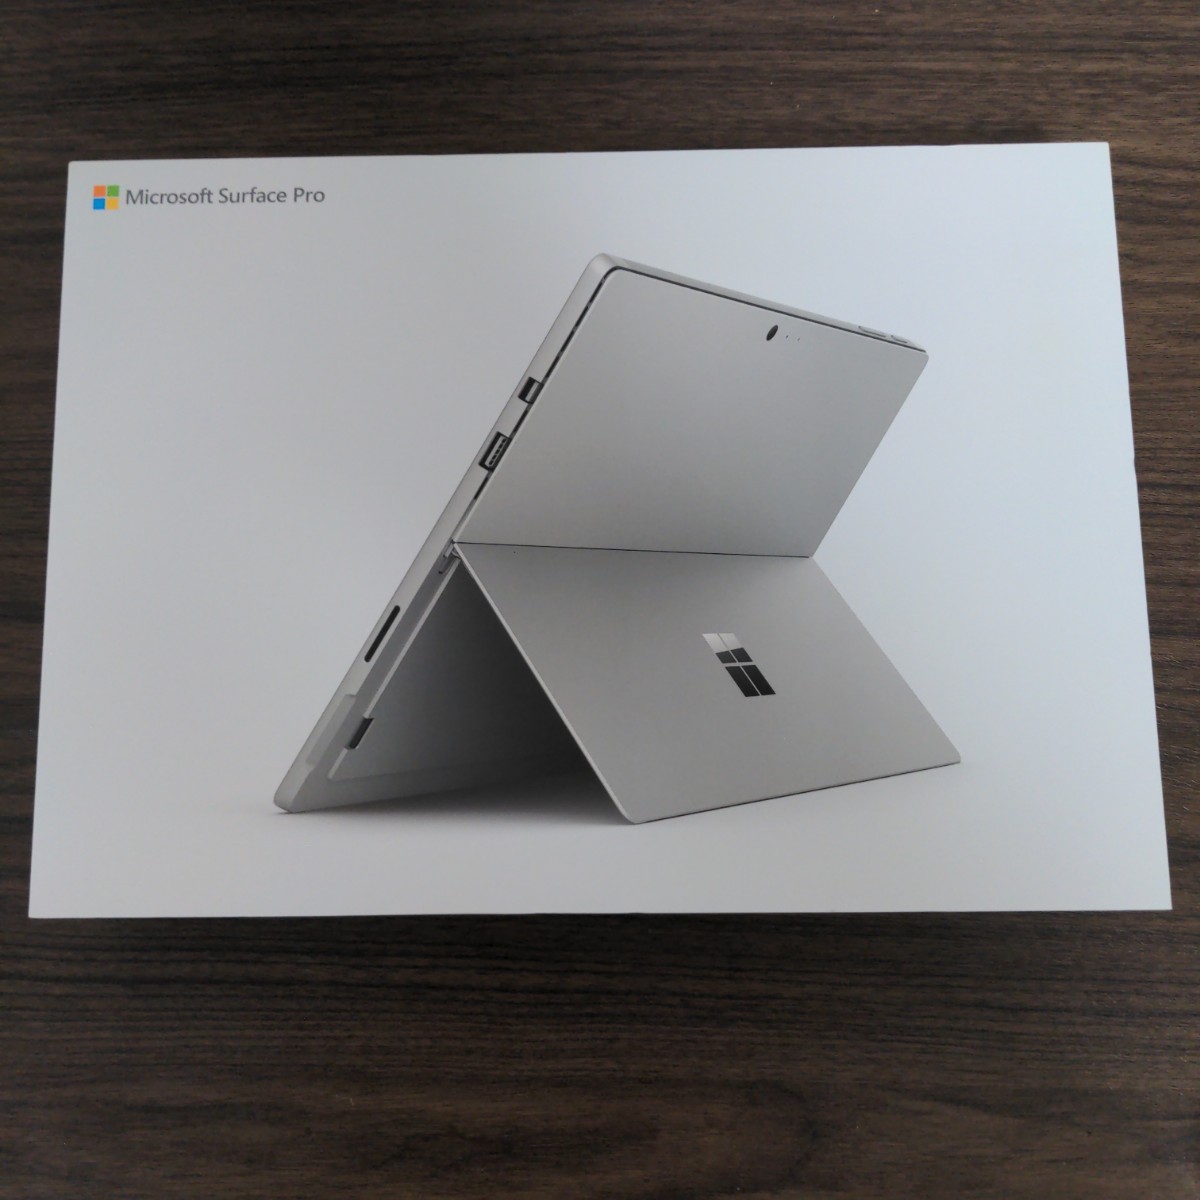 人気商品ランキング Microsoft Surface Pro 6 LGP-00017 | artfive.co.jp